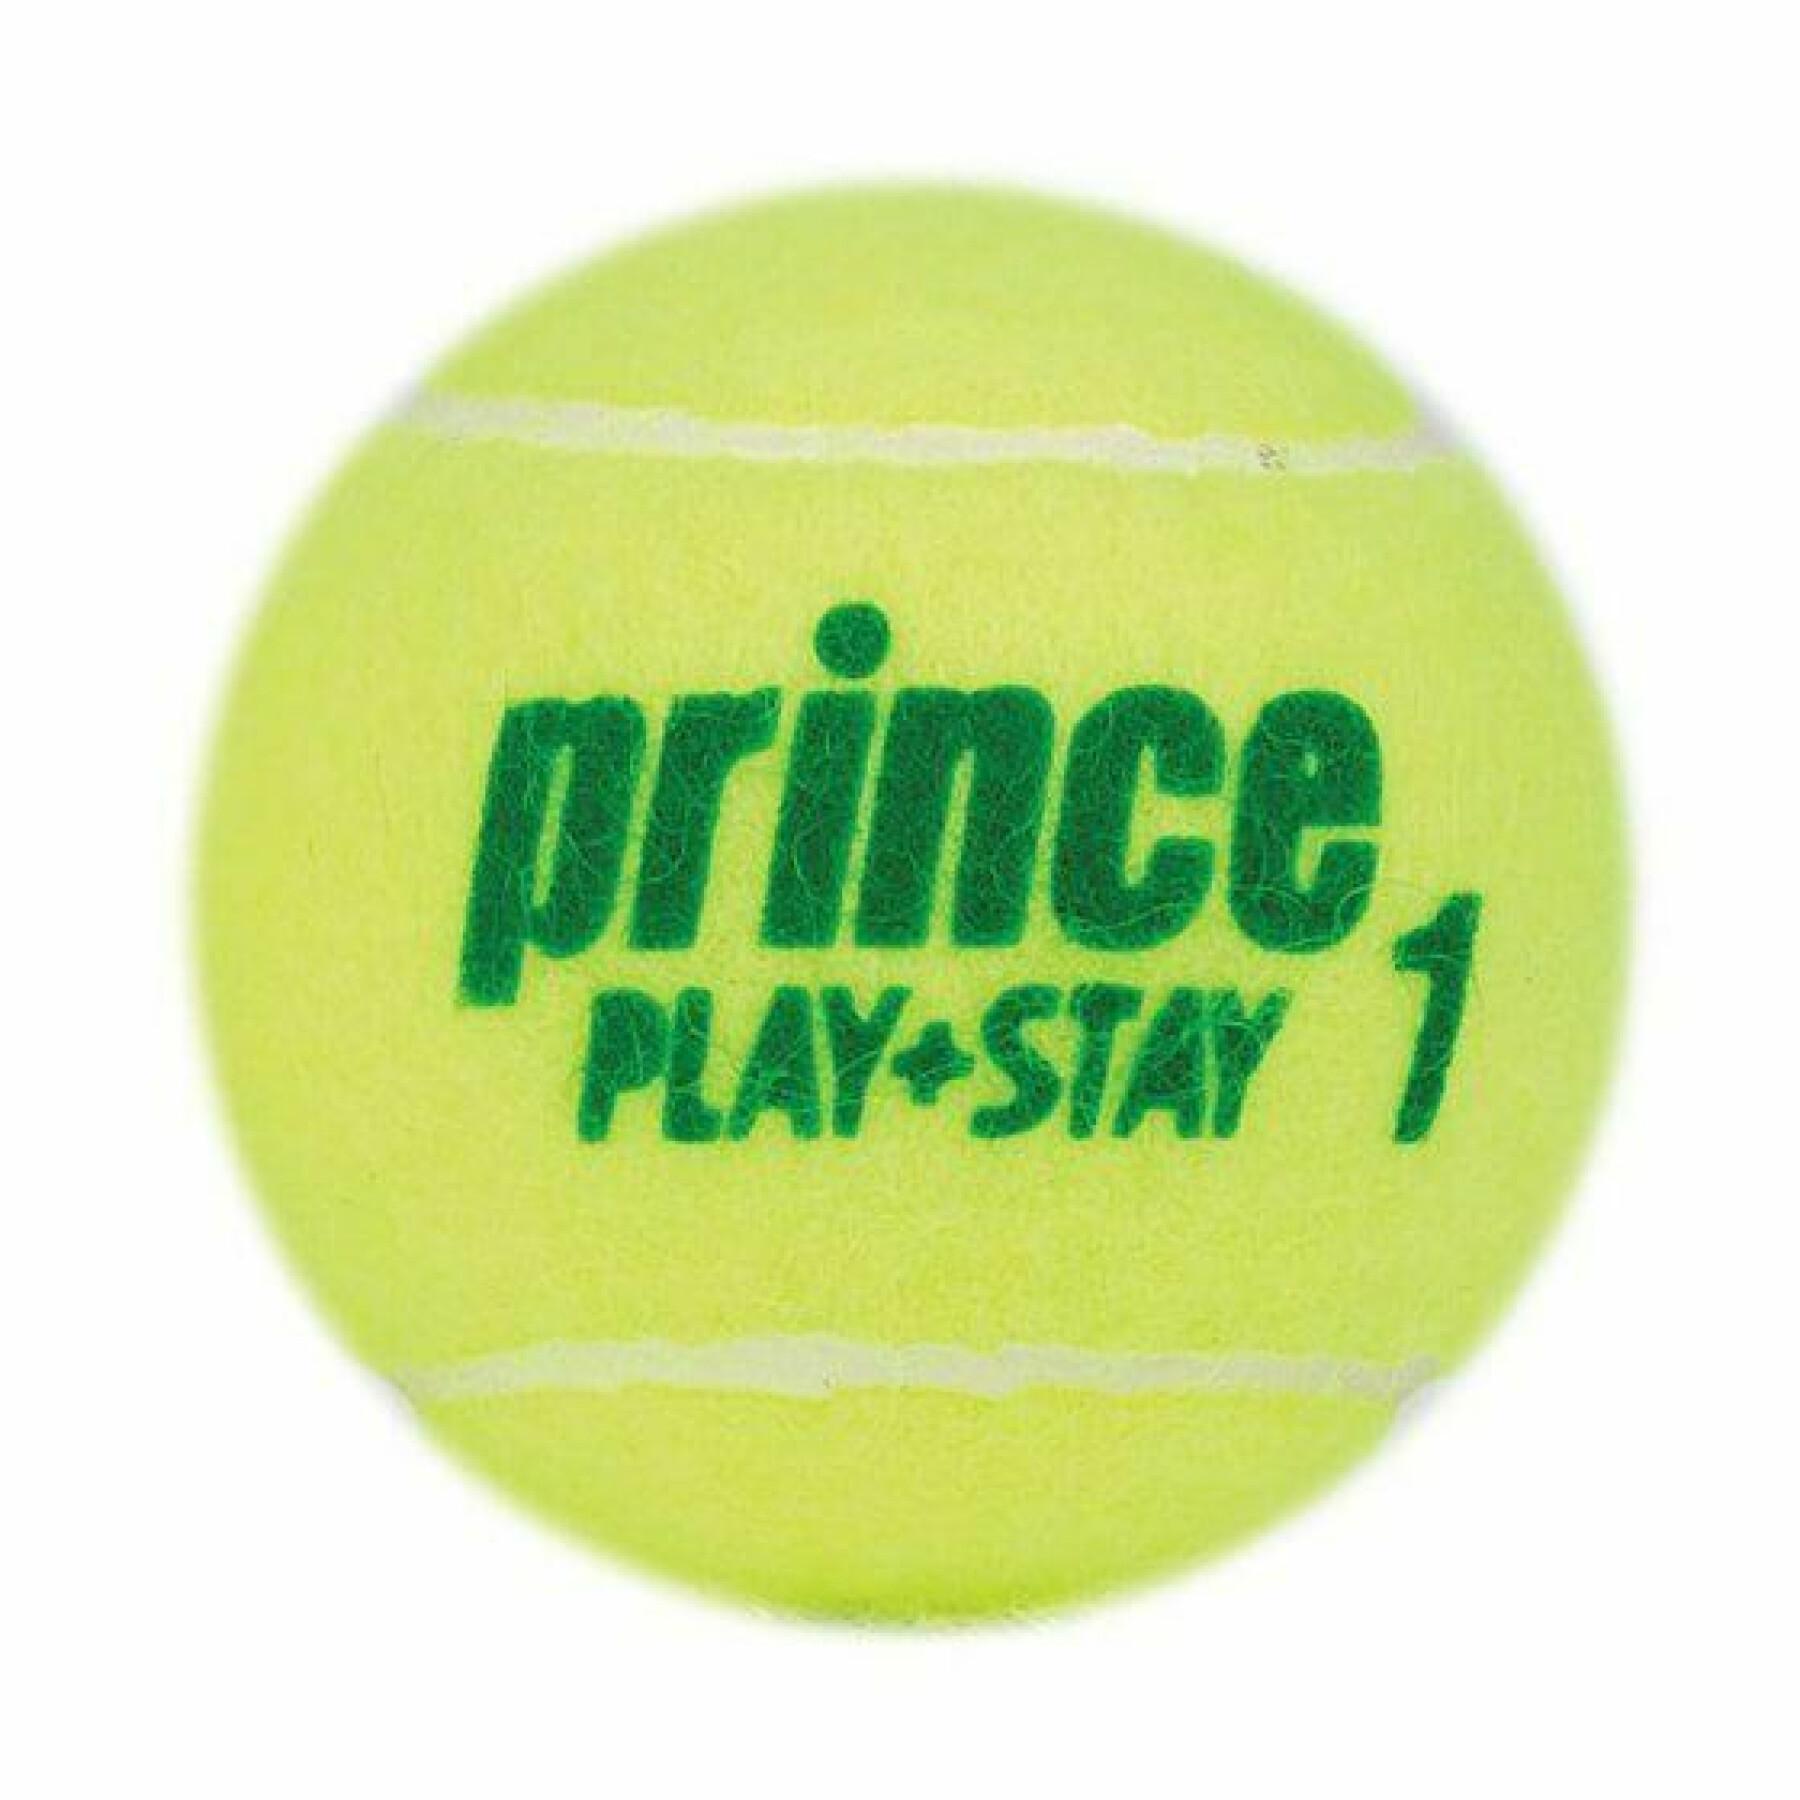 Tubo de 3 bolas de ténis Prince Play & Stay - stage 1